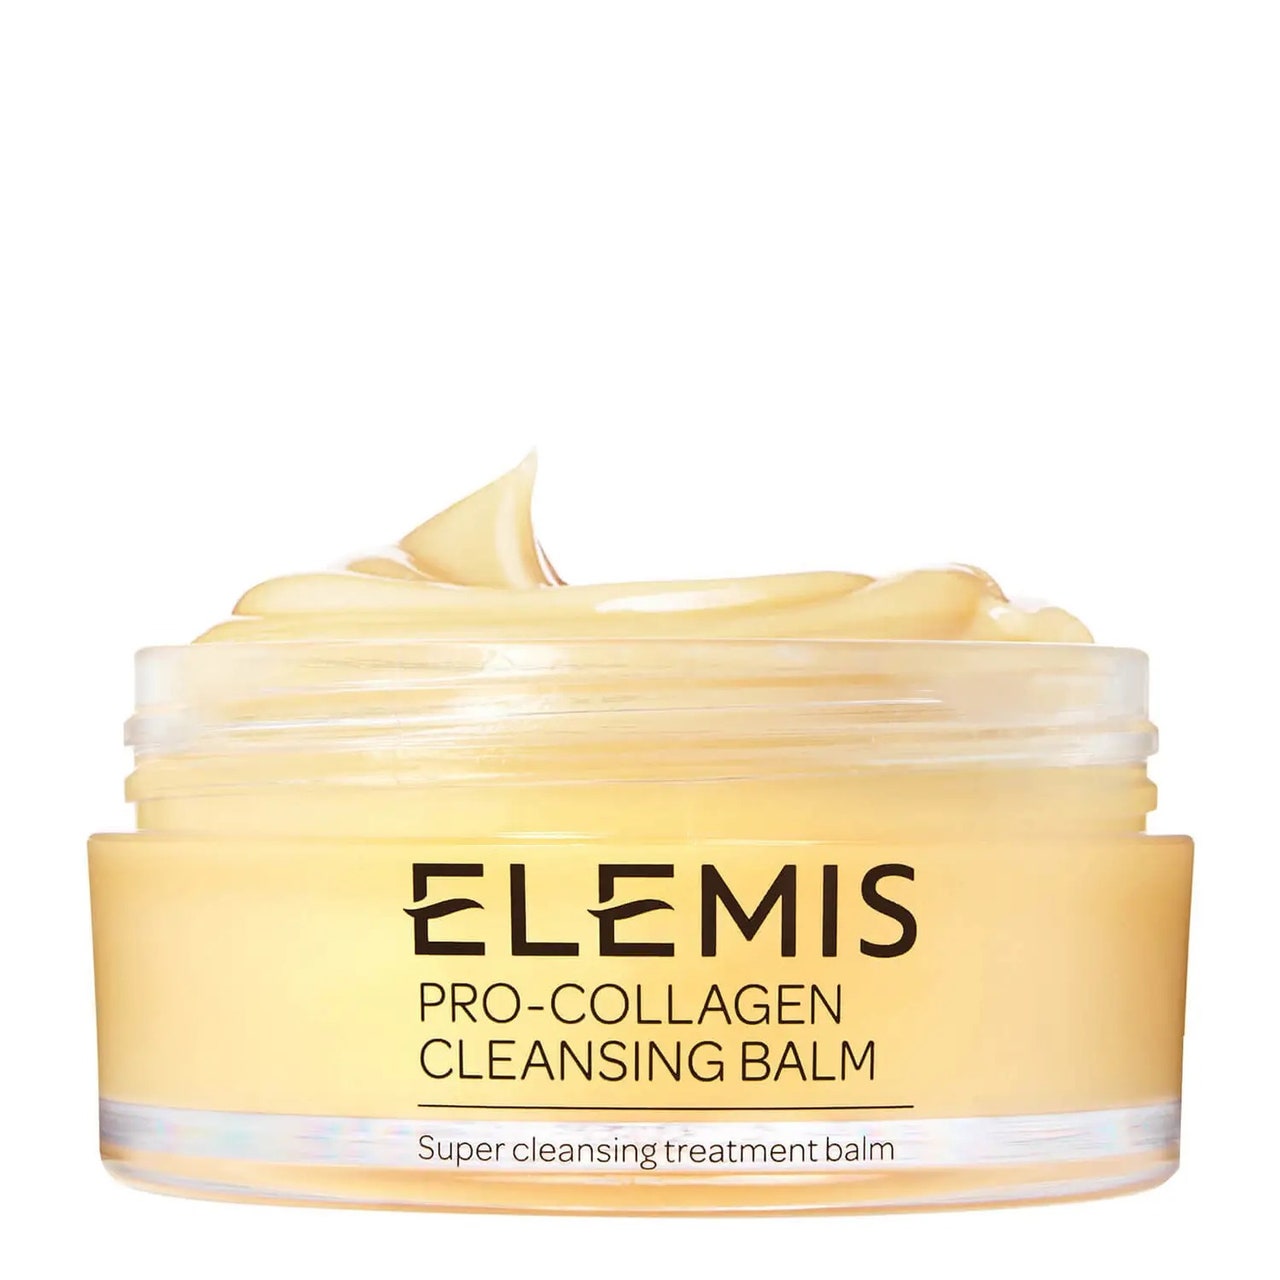 ELEMIS Pro-Collagen Cleansing Balm im offenen Glas mit gelbem Inhalt auf weißem Hintergrund